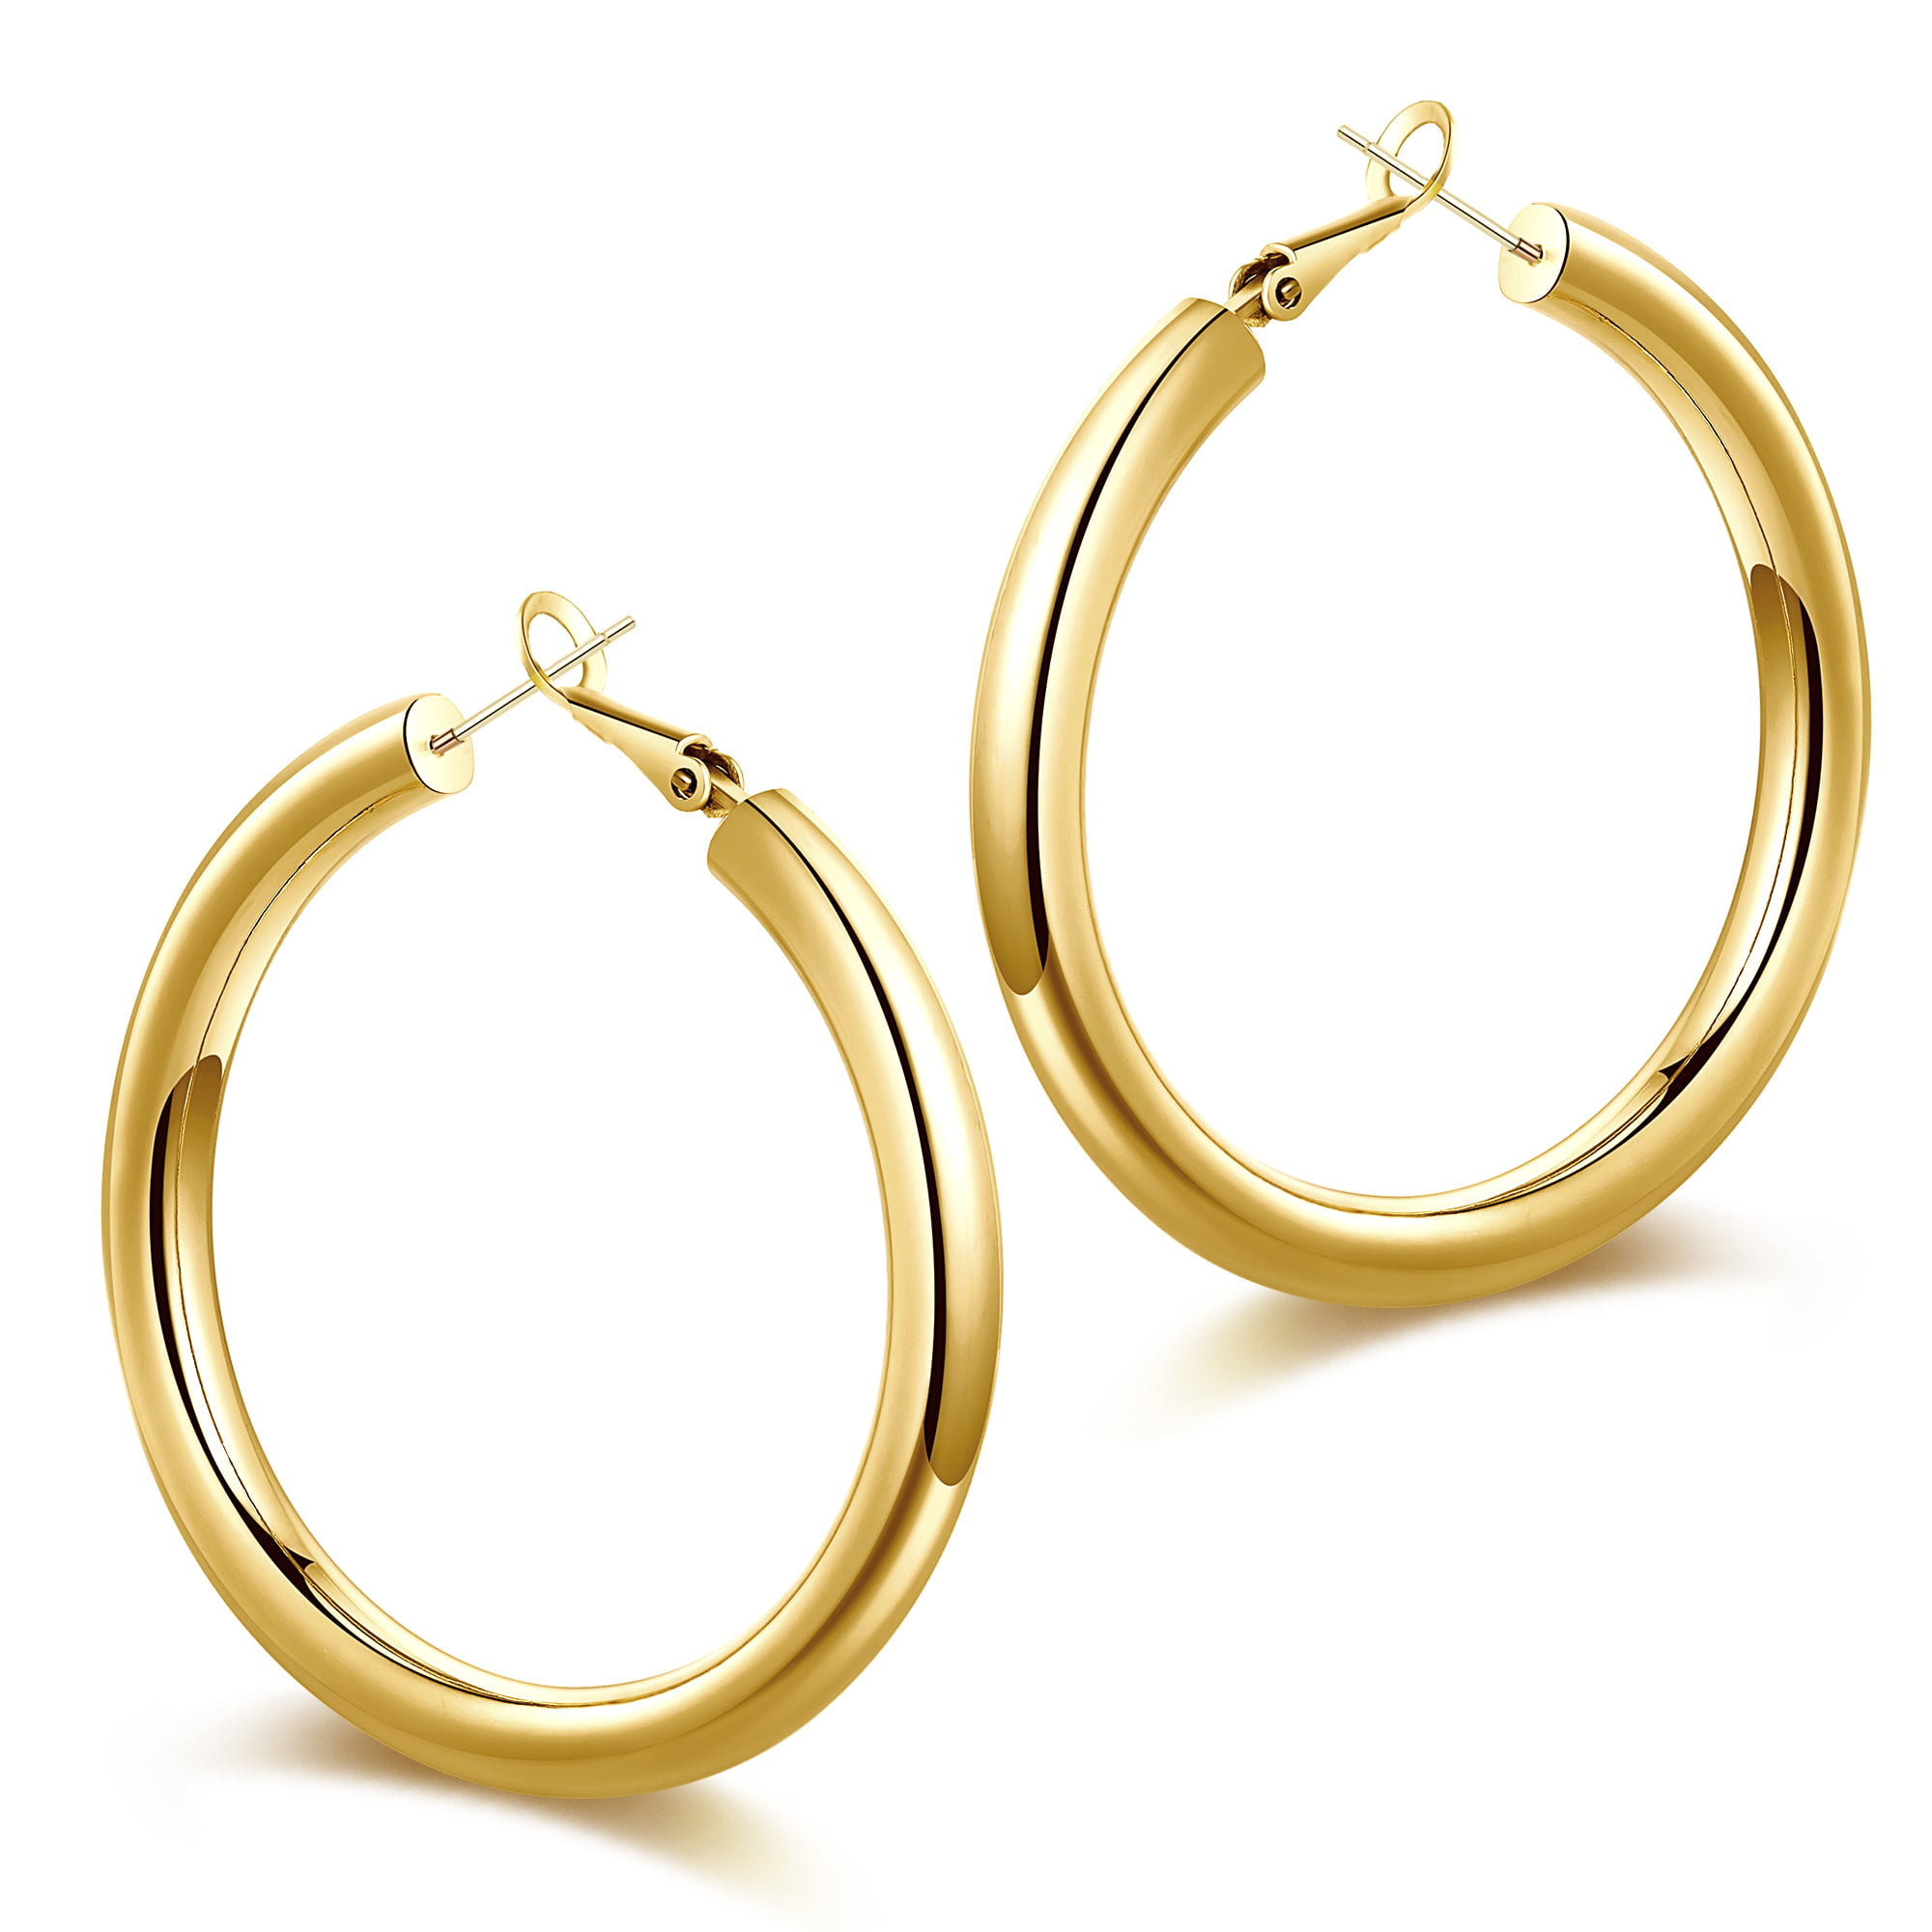 14K Gold Colored Lightweight Chunky Open Hoops Gold Hoop Earrings For Women Thick Earrings Cartilage Earring Fashion Piercing Jewelry Huggie Hoop Earrings Surgical Steel Lobe Earrings 